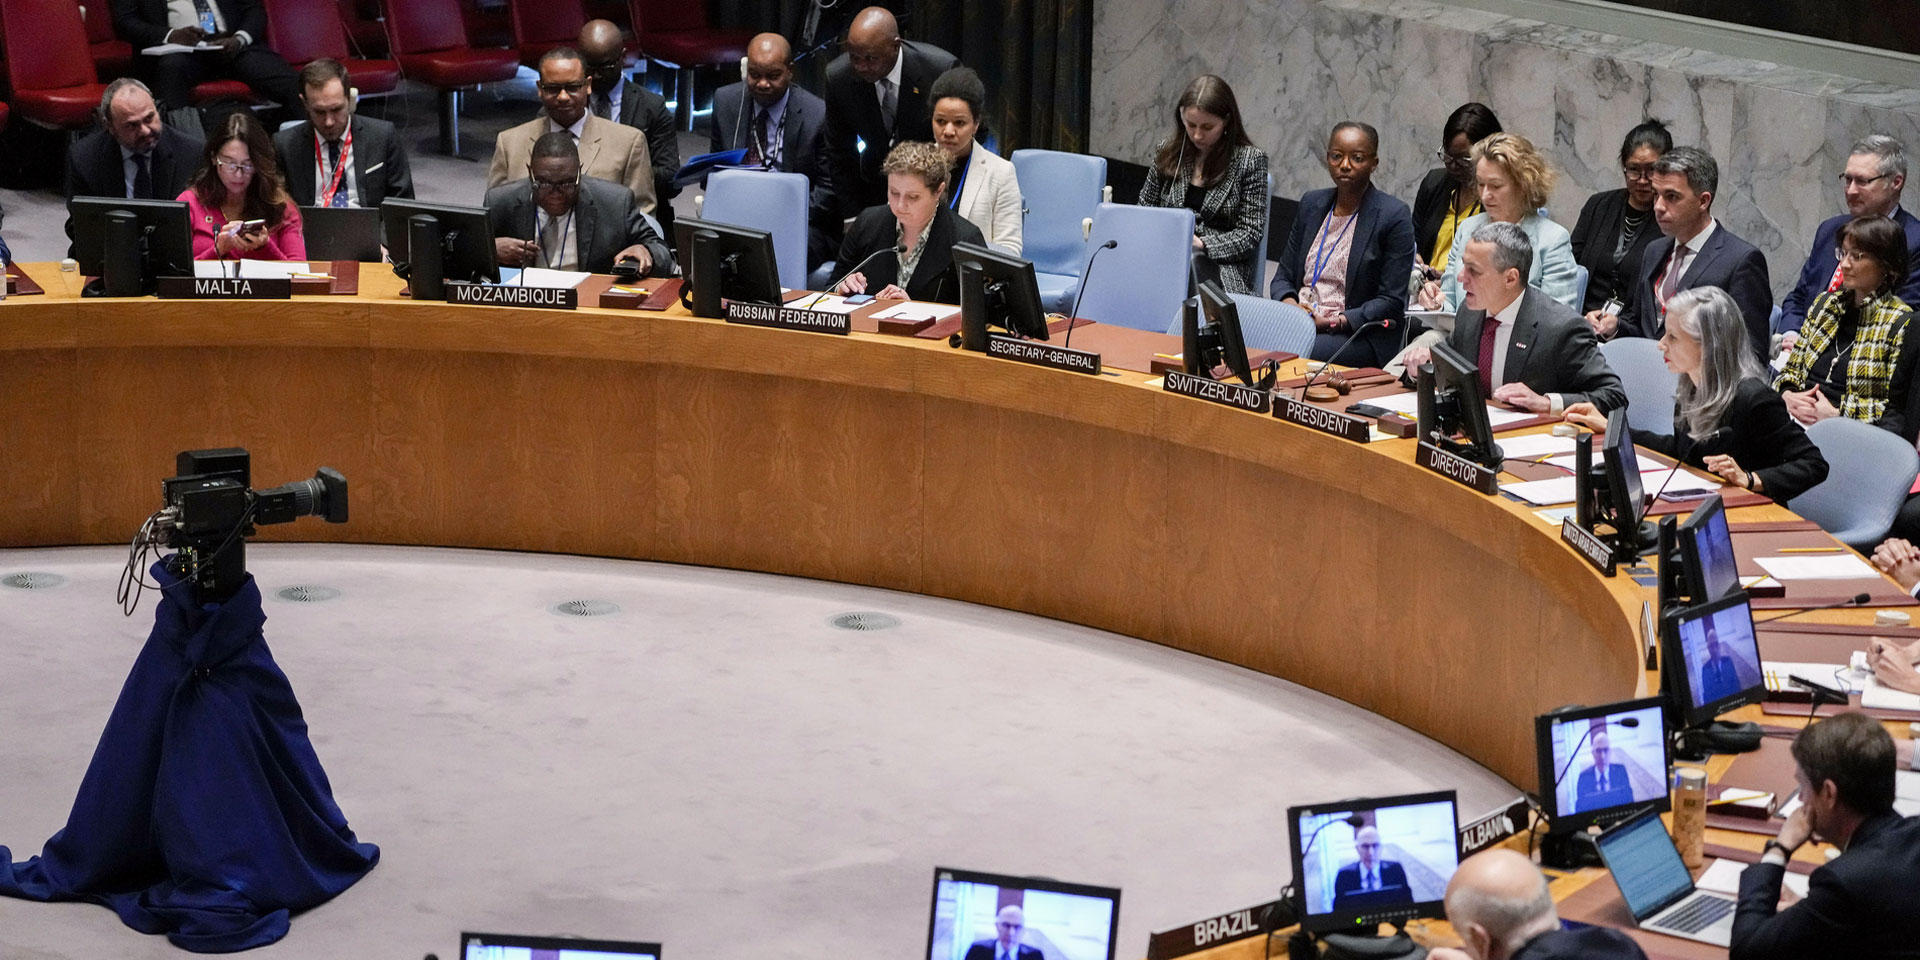 Männer und Frauen sitzen am hufeisenförmigen Tisch des UNO-Sicherheitsrats und hören den Ausführungen von Bundesrat Ignazio Cassis zu.